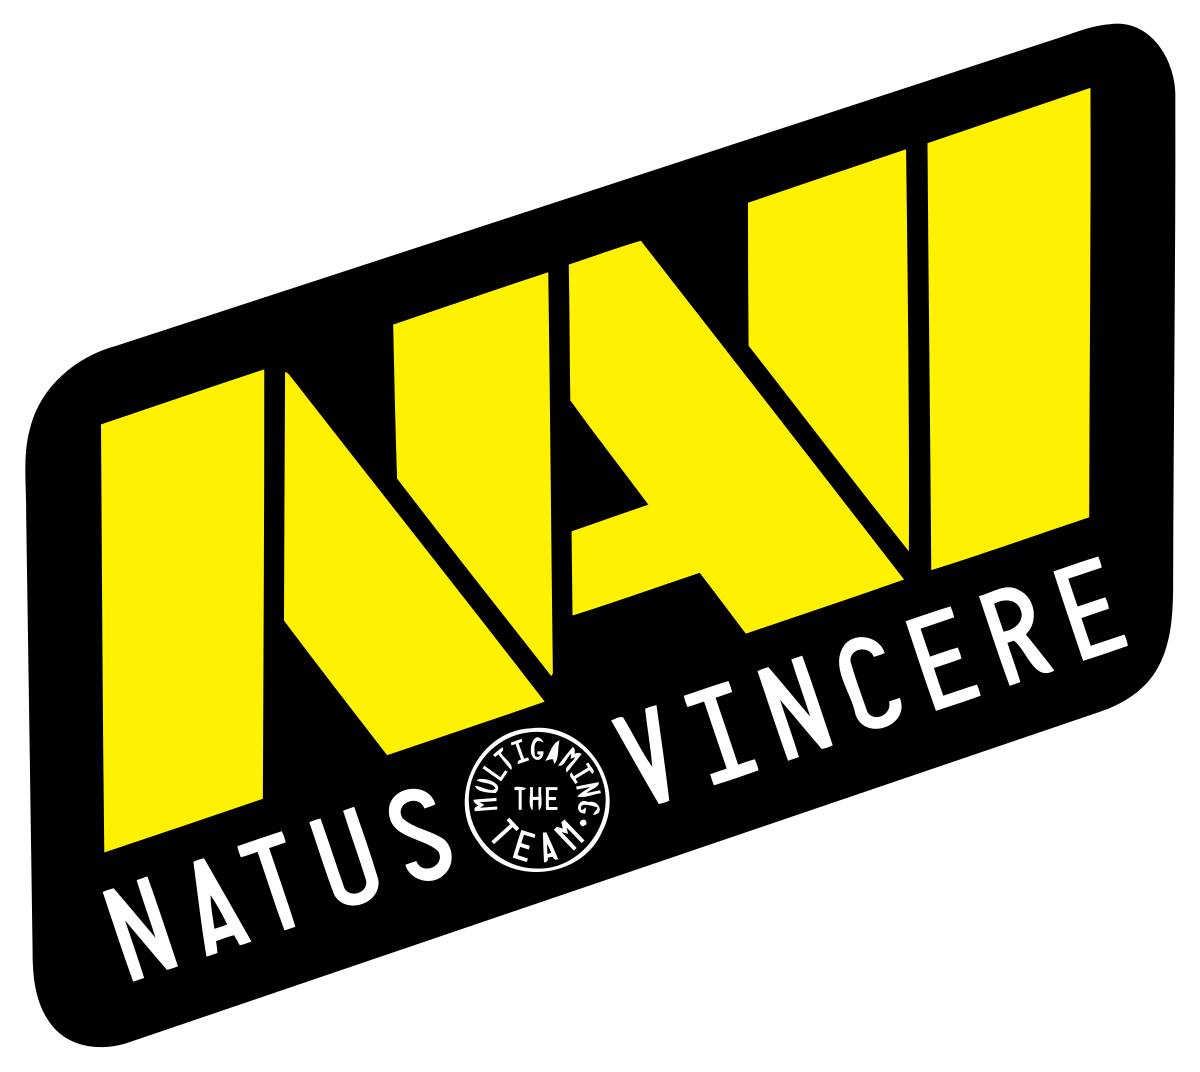 Natus Vincere вернулась на второе место в рейтинге HLTV